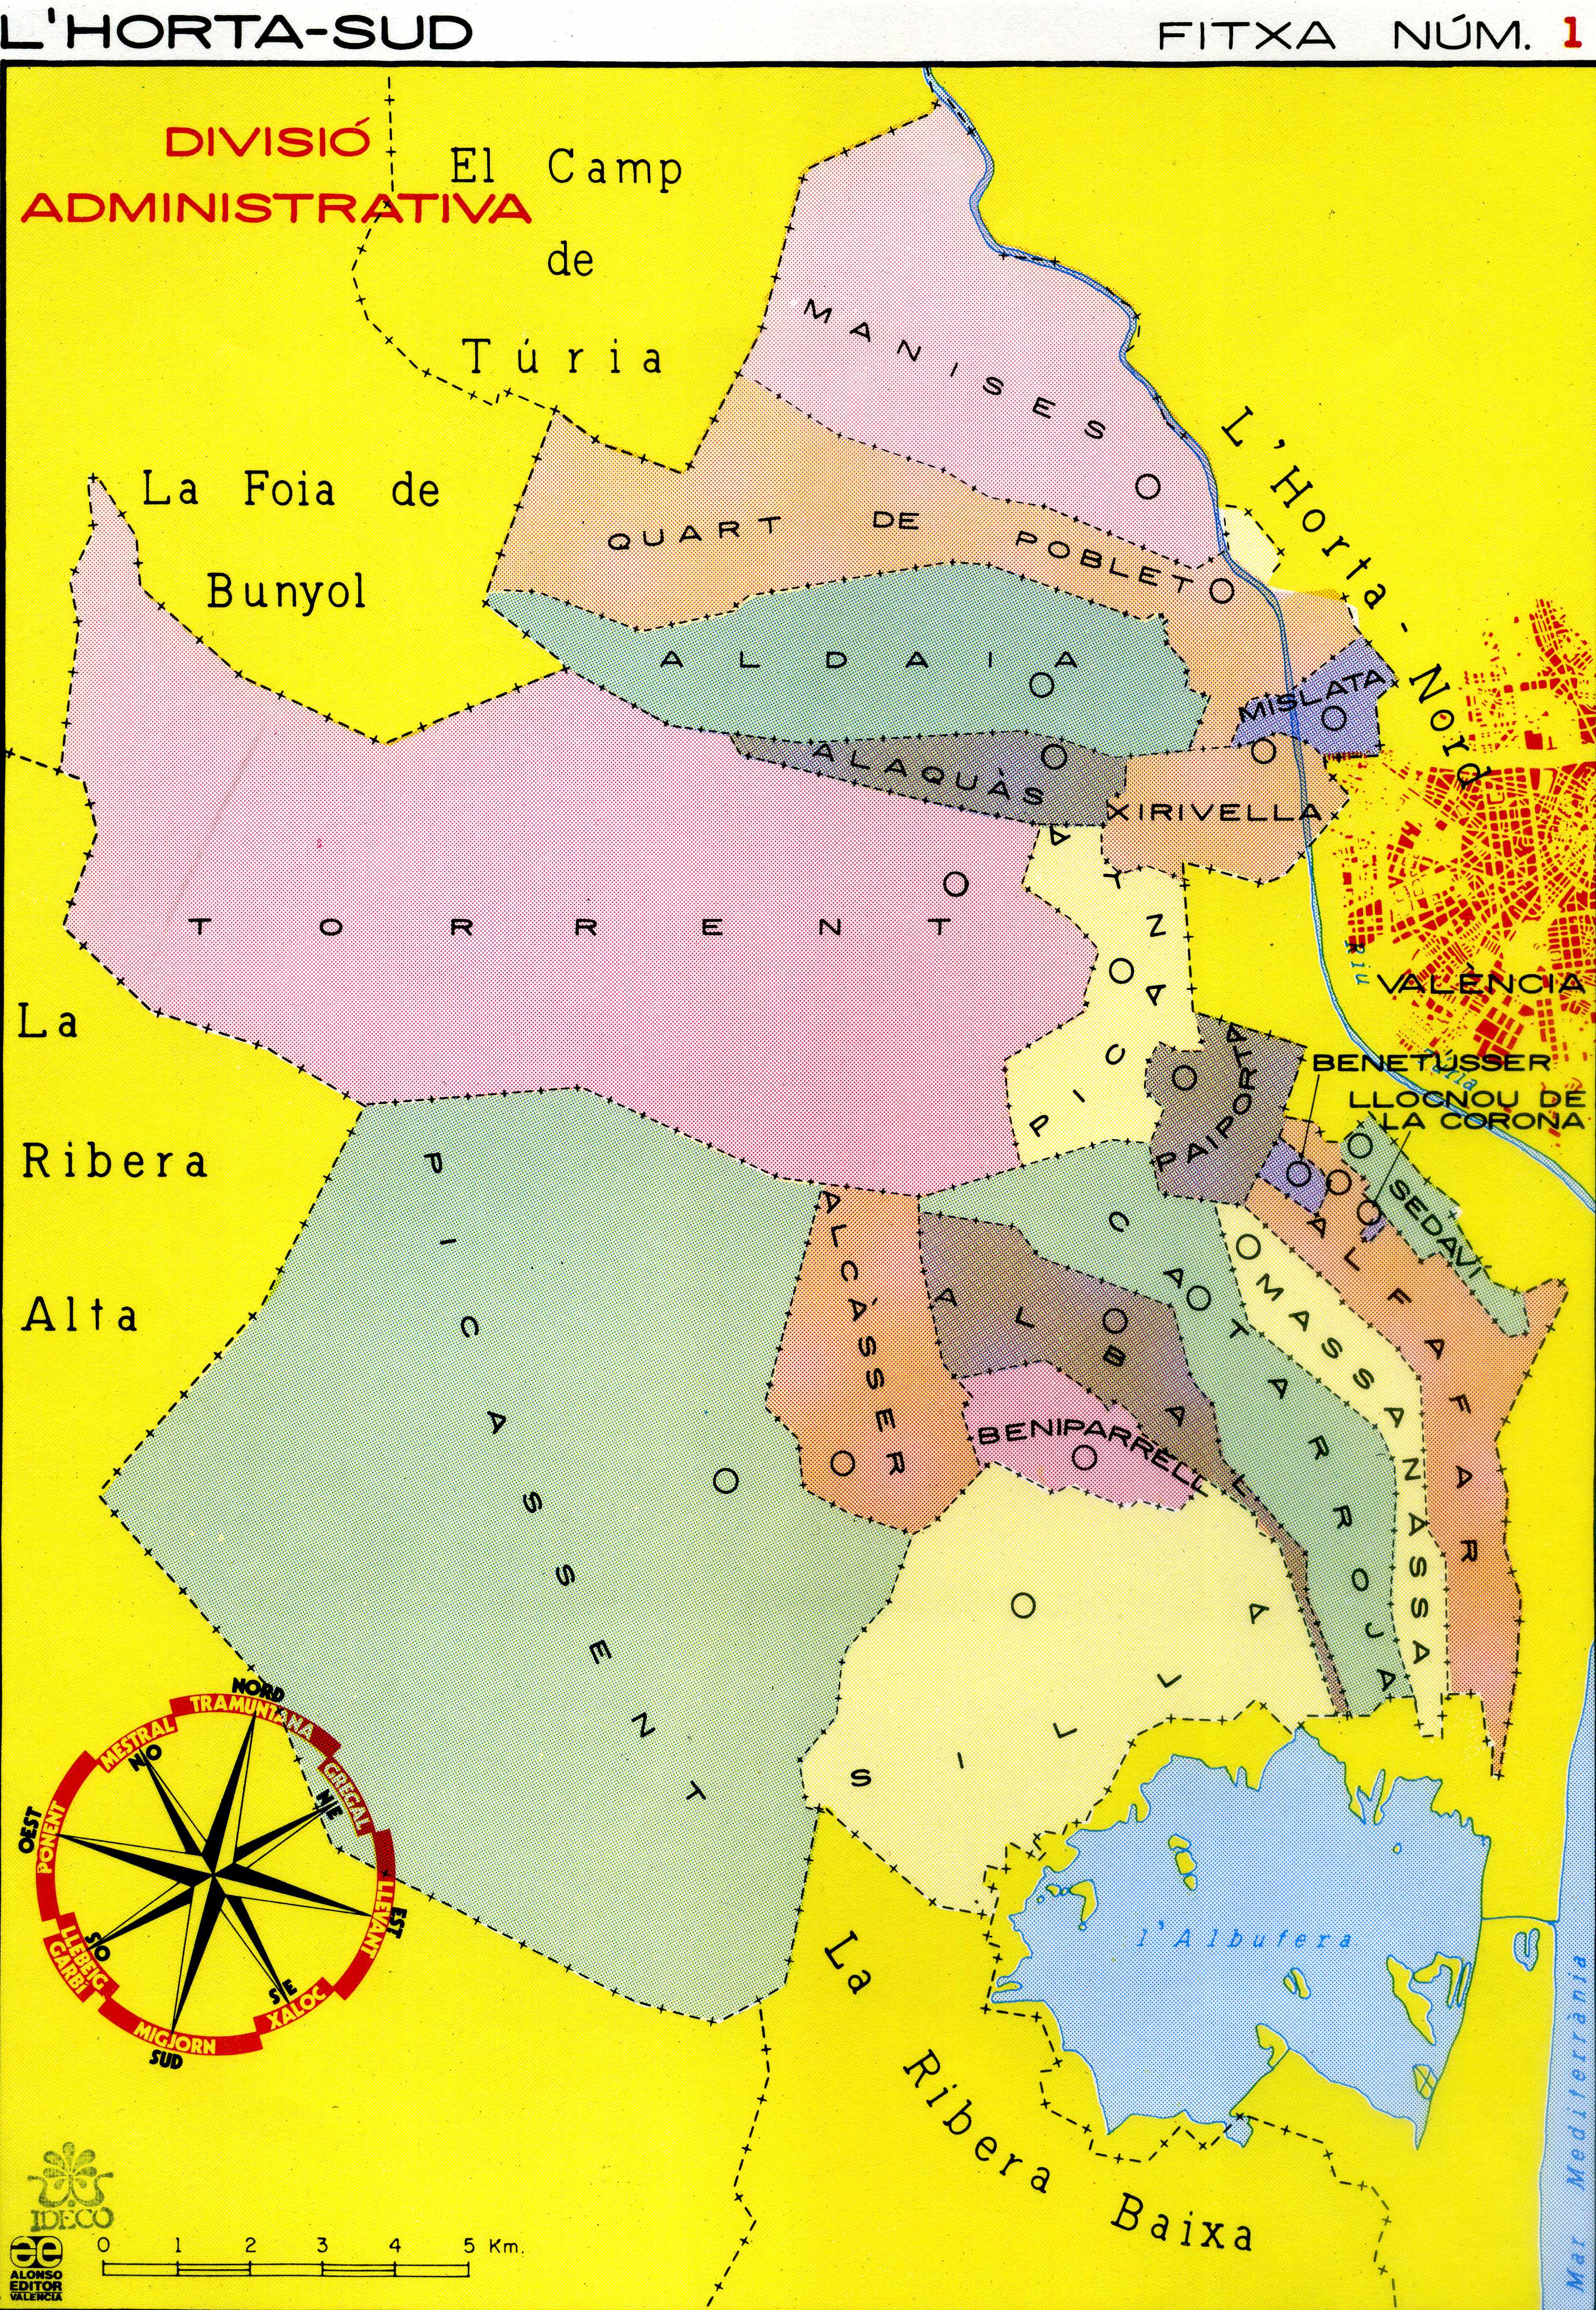 CEL-DO-A0122 - Mapes escolars de L'Horta Sud (1)